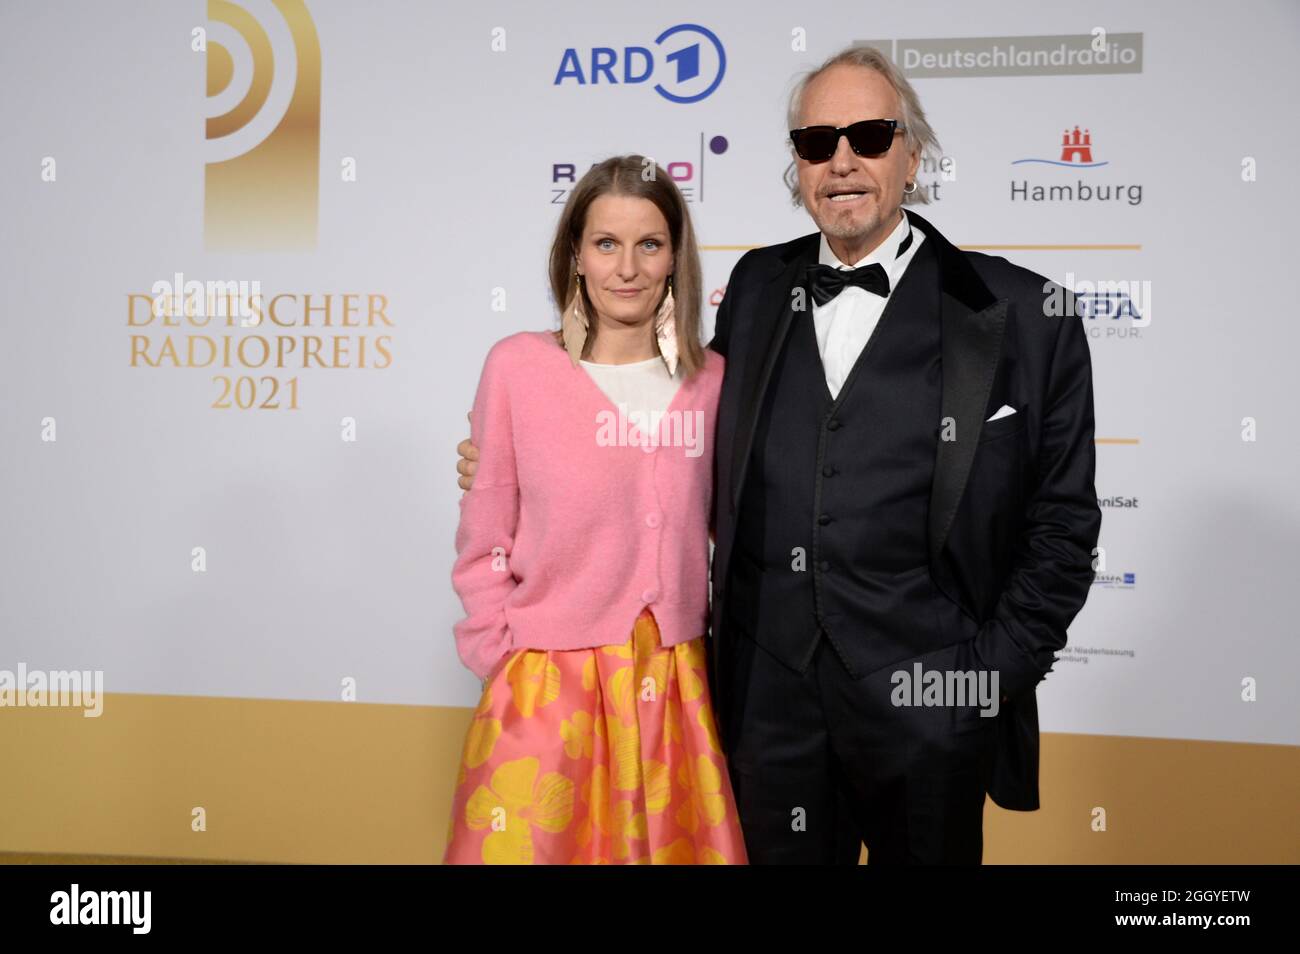 Hamburg der 02.09.2021 - Rainer schöne und seine Ehefrau Anja schöne bei der Verleihung des Deutschen Radiopreises 2021 in Hamburg auf dem goldenen Teppich. Stockfoto